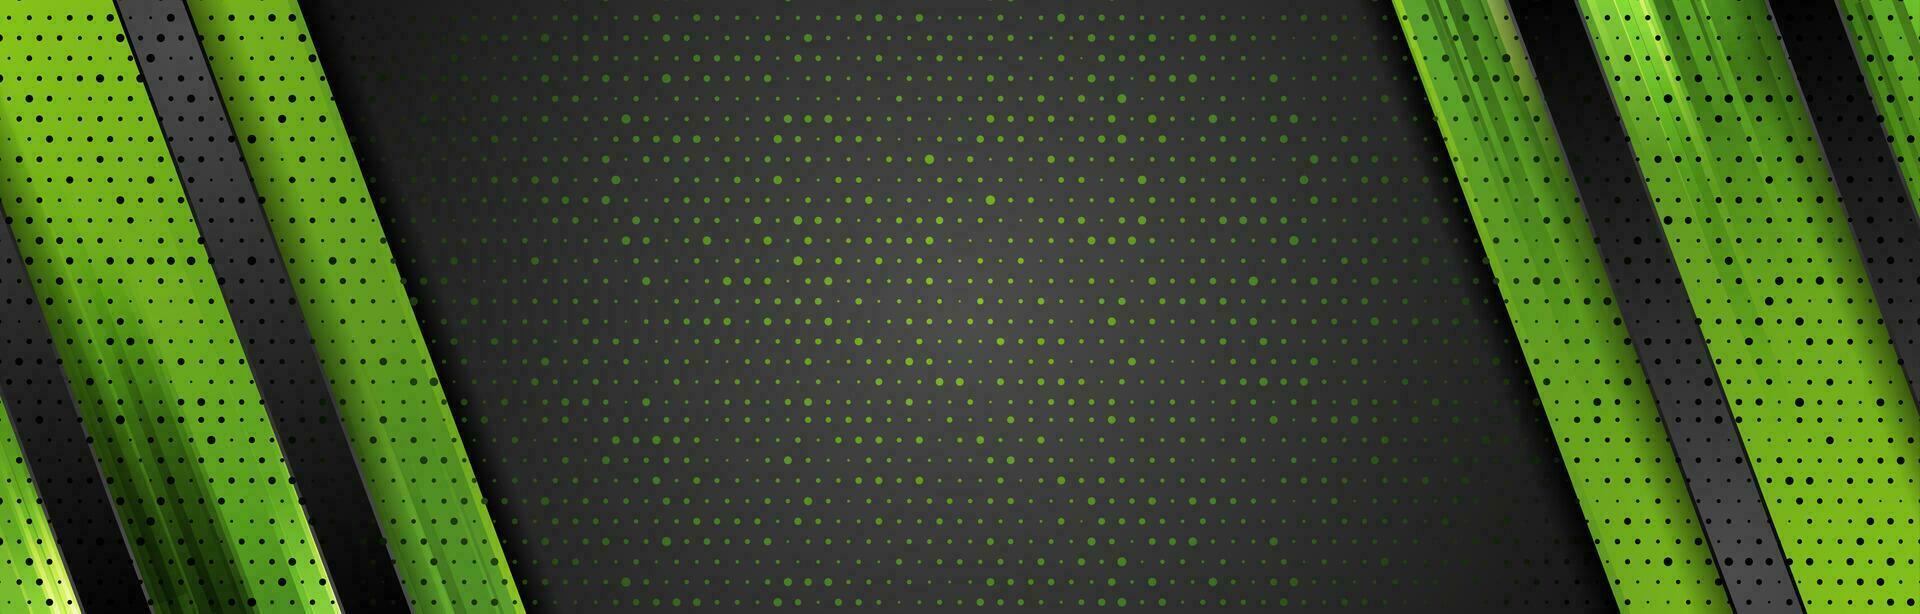 zwart en groen abstract zakelijke achtergrond vector